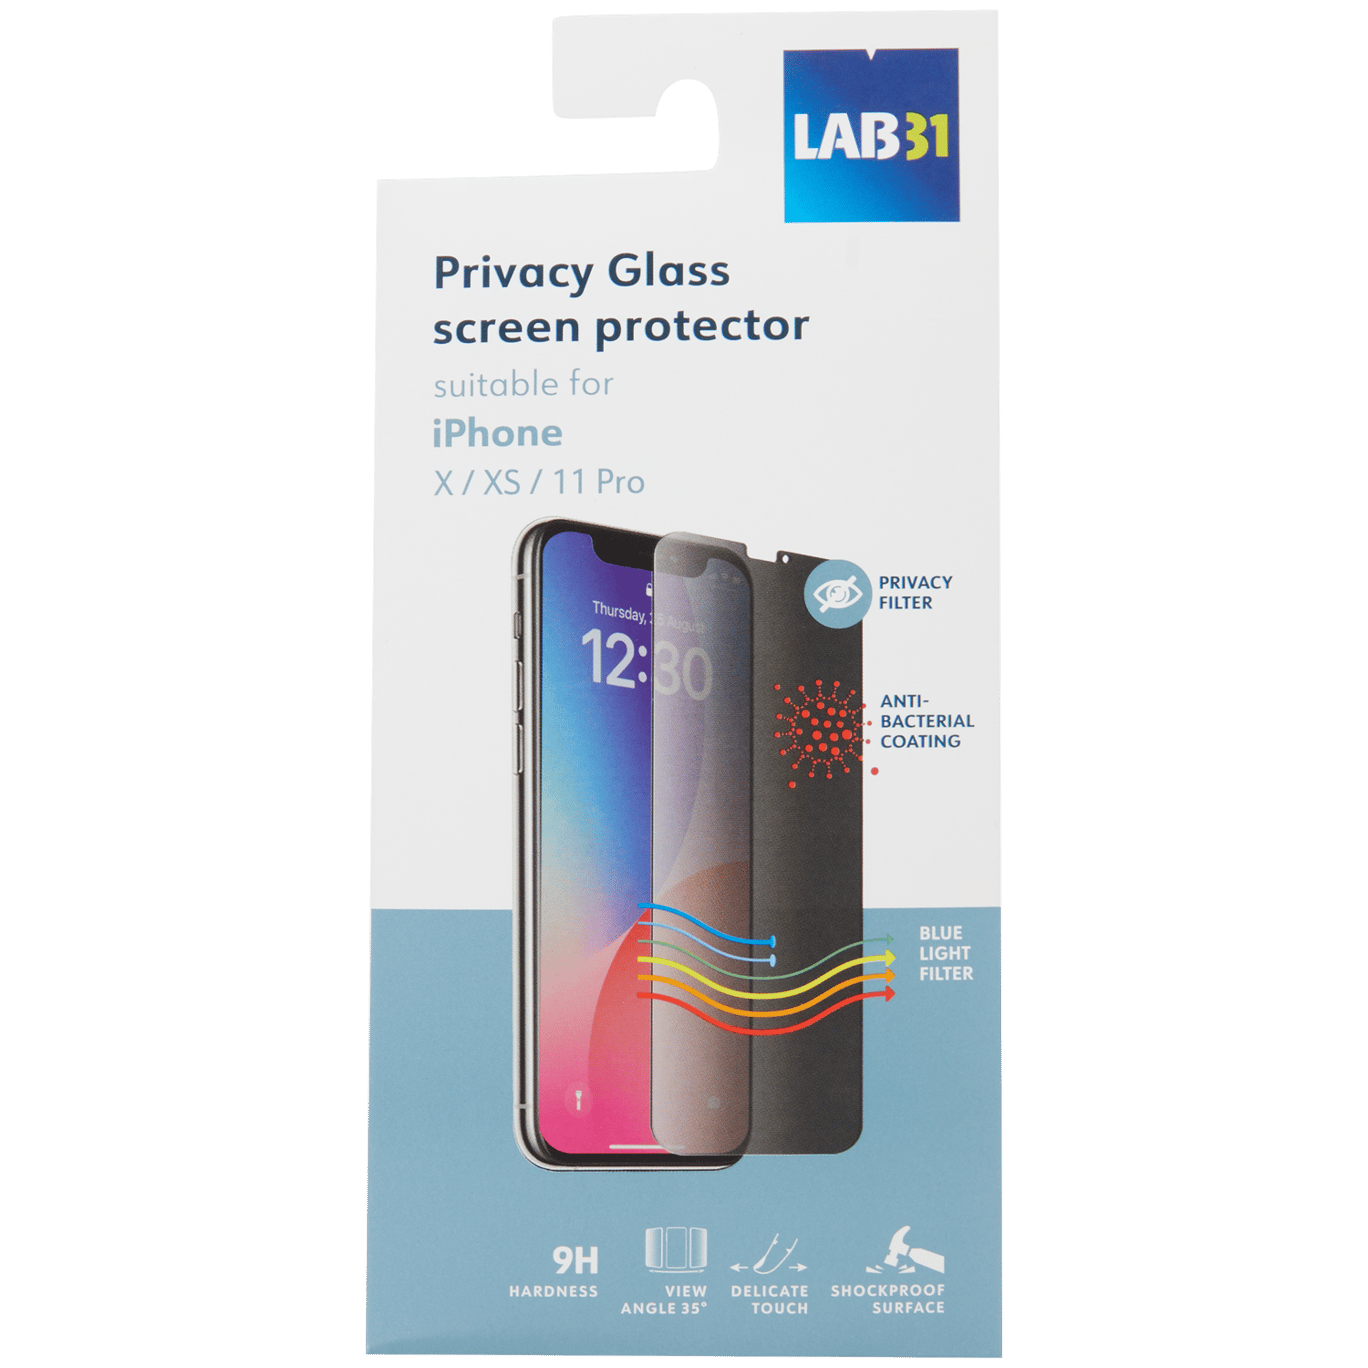 Ochrana displeja a súkromia Lab31